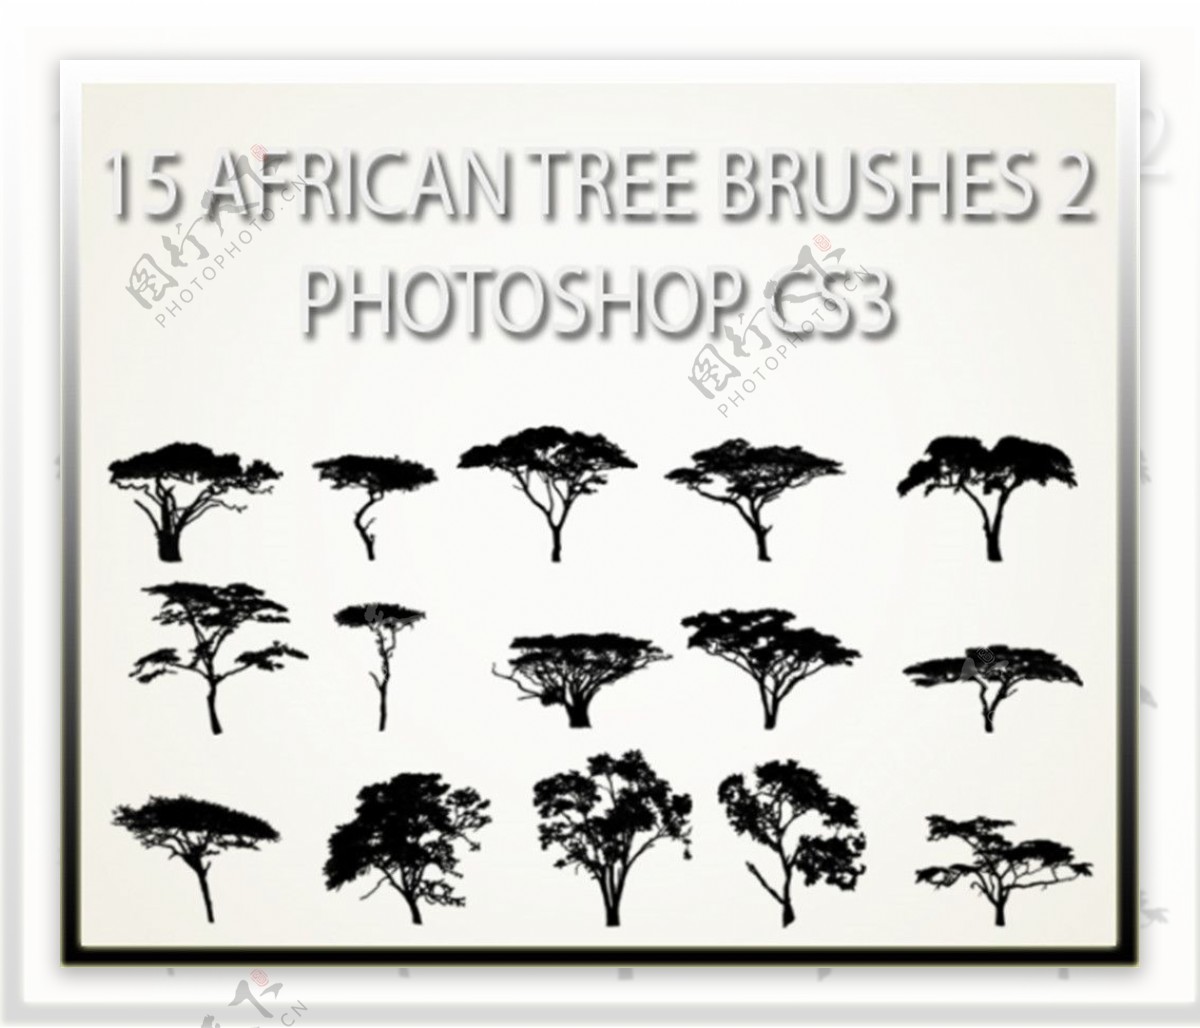 15种非洲草原树木剪影图形PS笔刷素材